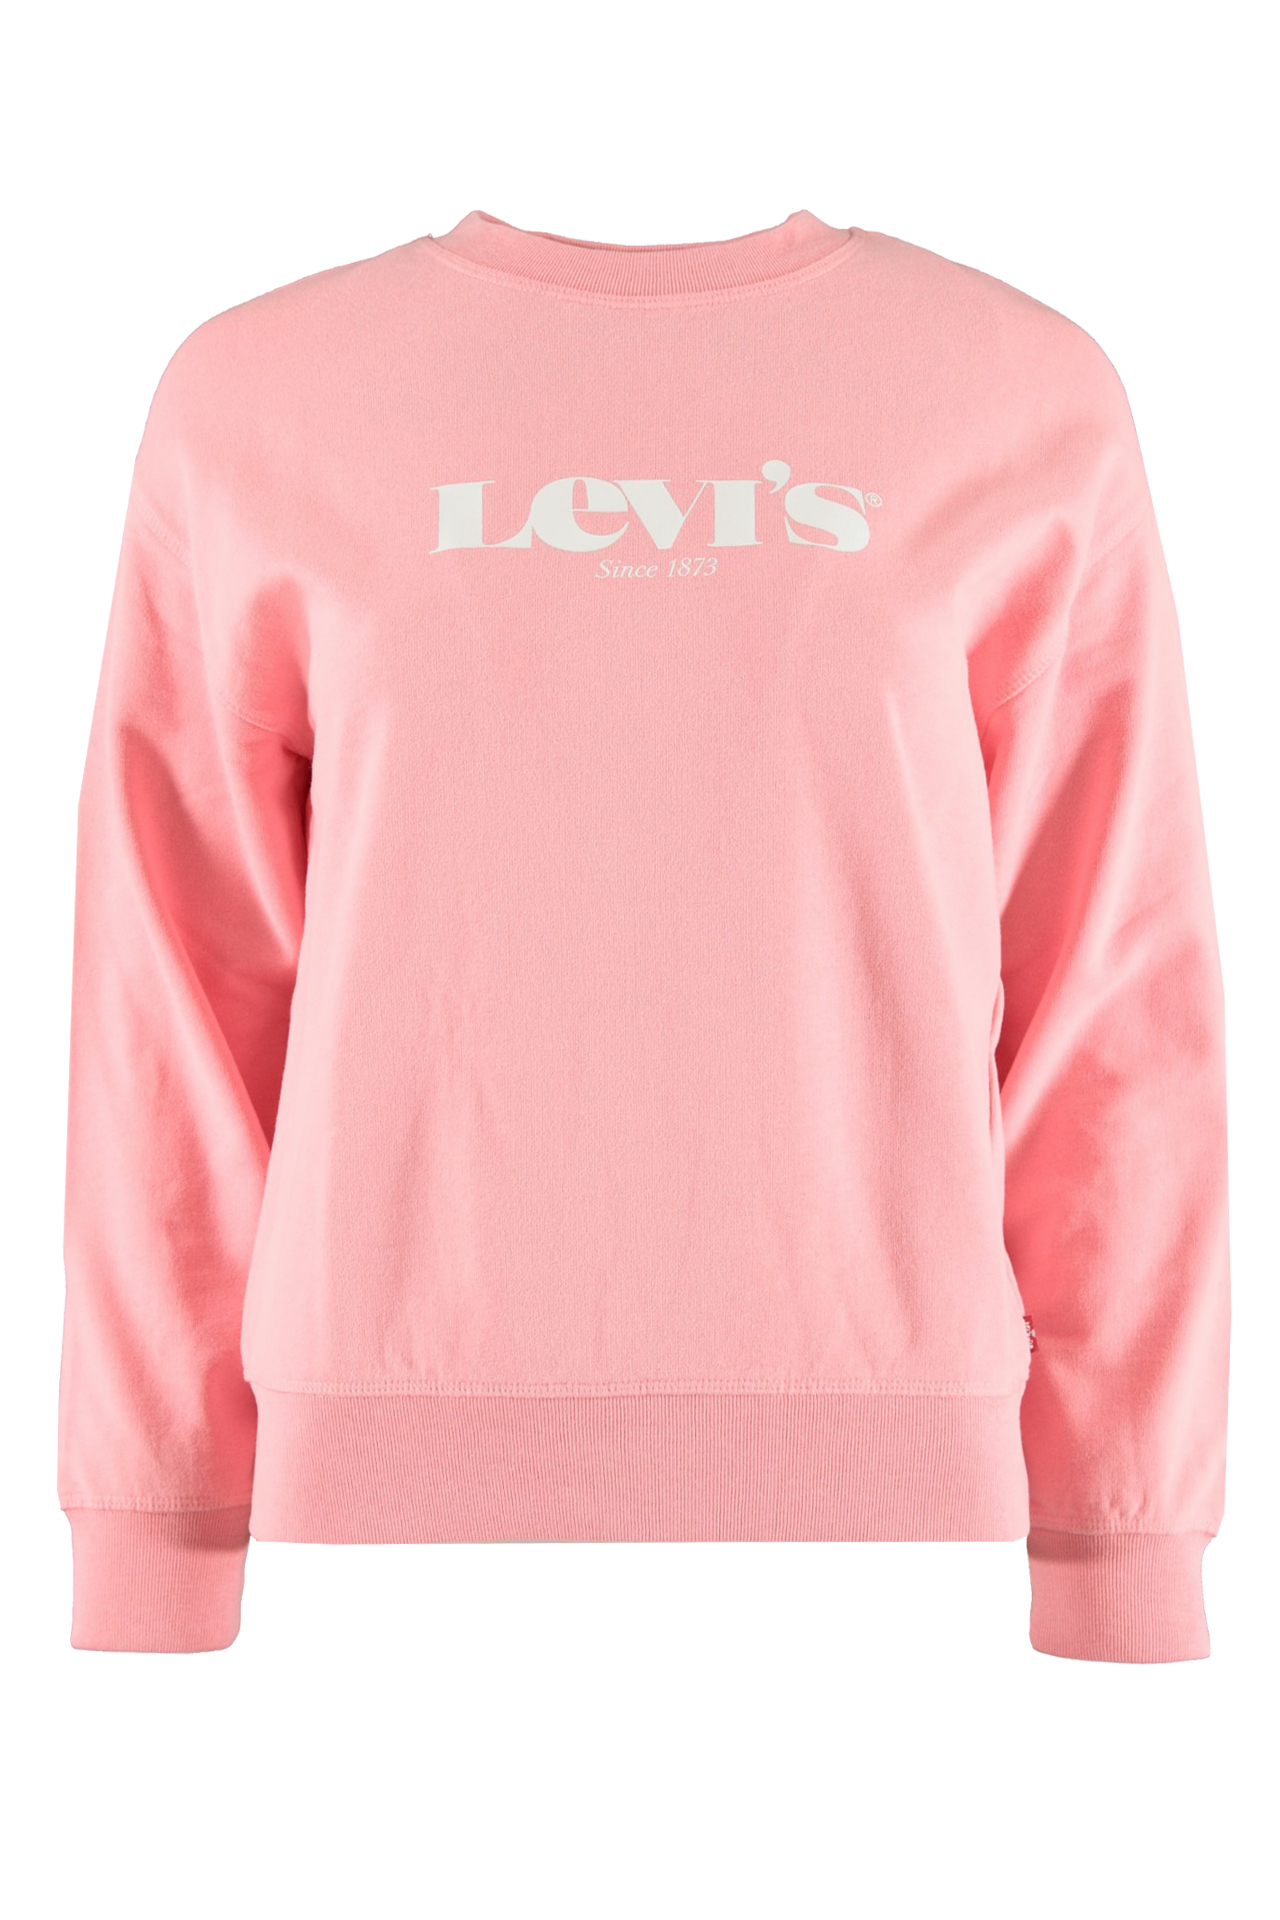 Citaat Regenboog Investeren Levi's sweater